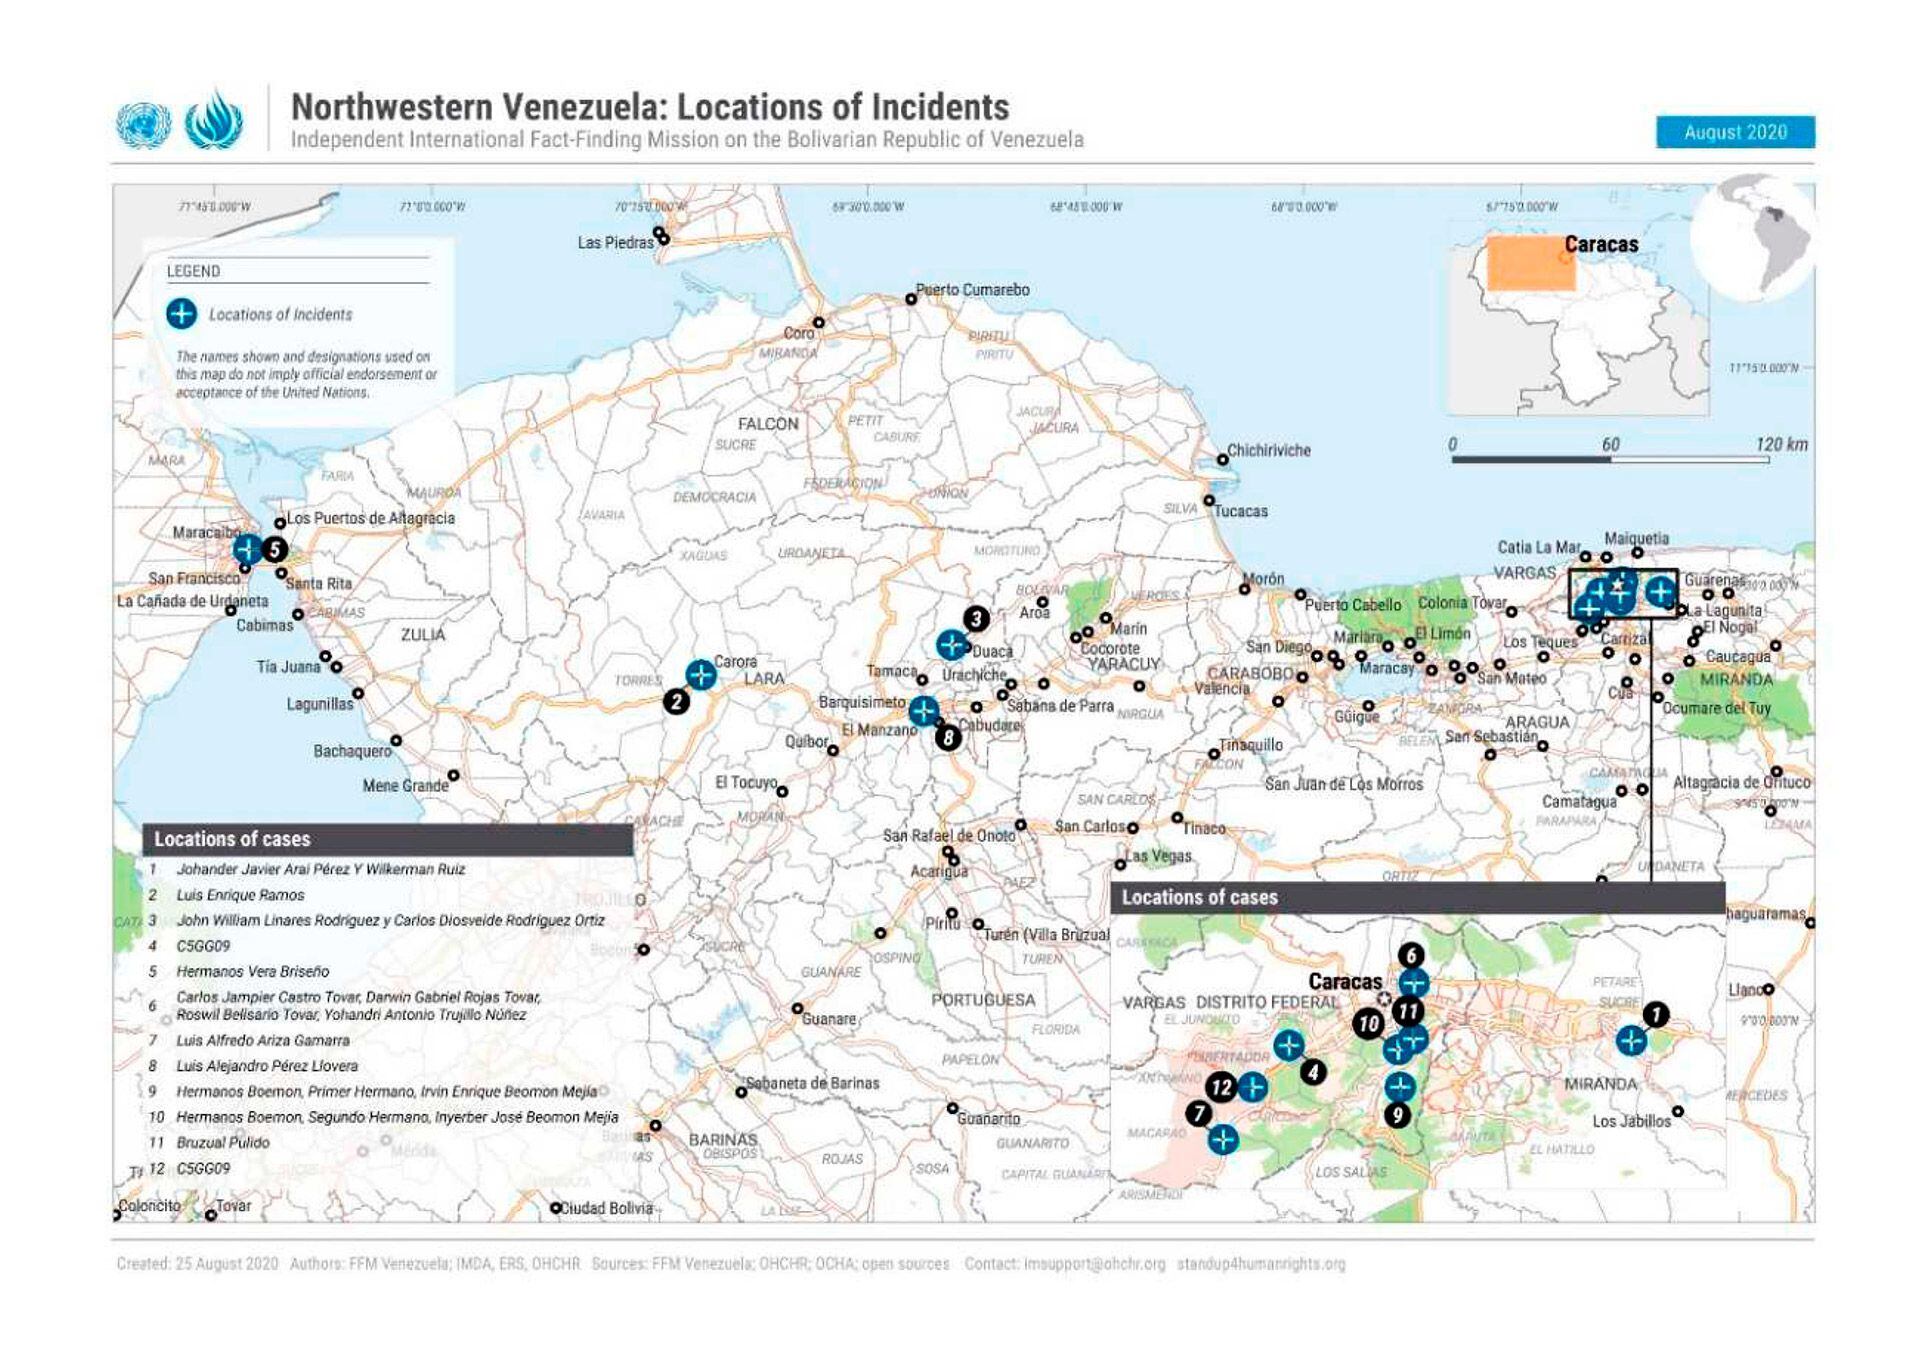 Centros de detención Venezuela